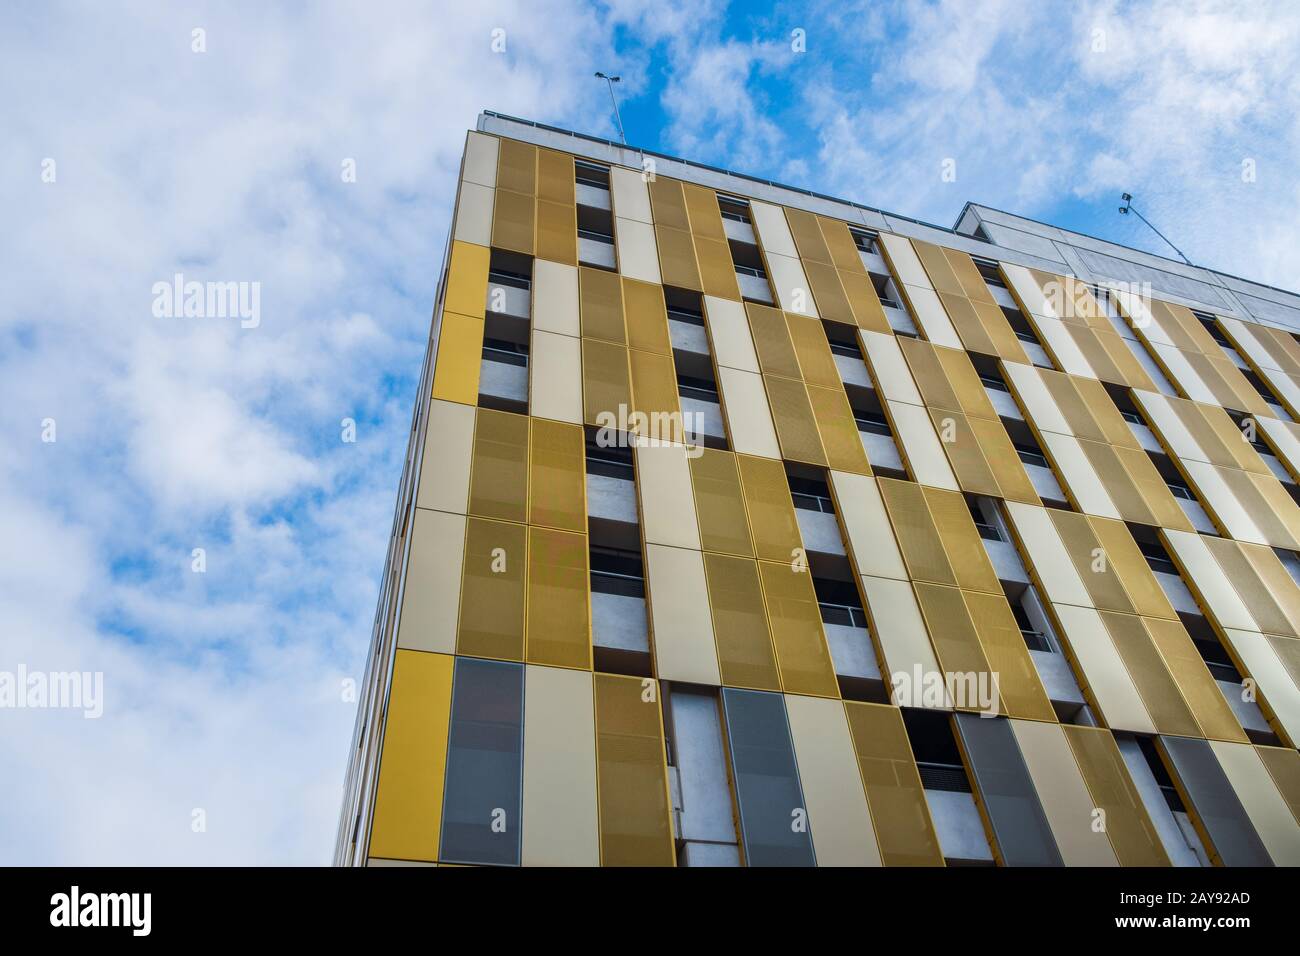 Colores y formas contrastantes en la fachada del edificio contra el cielo en Manchester, Reino Unido Foto de stock